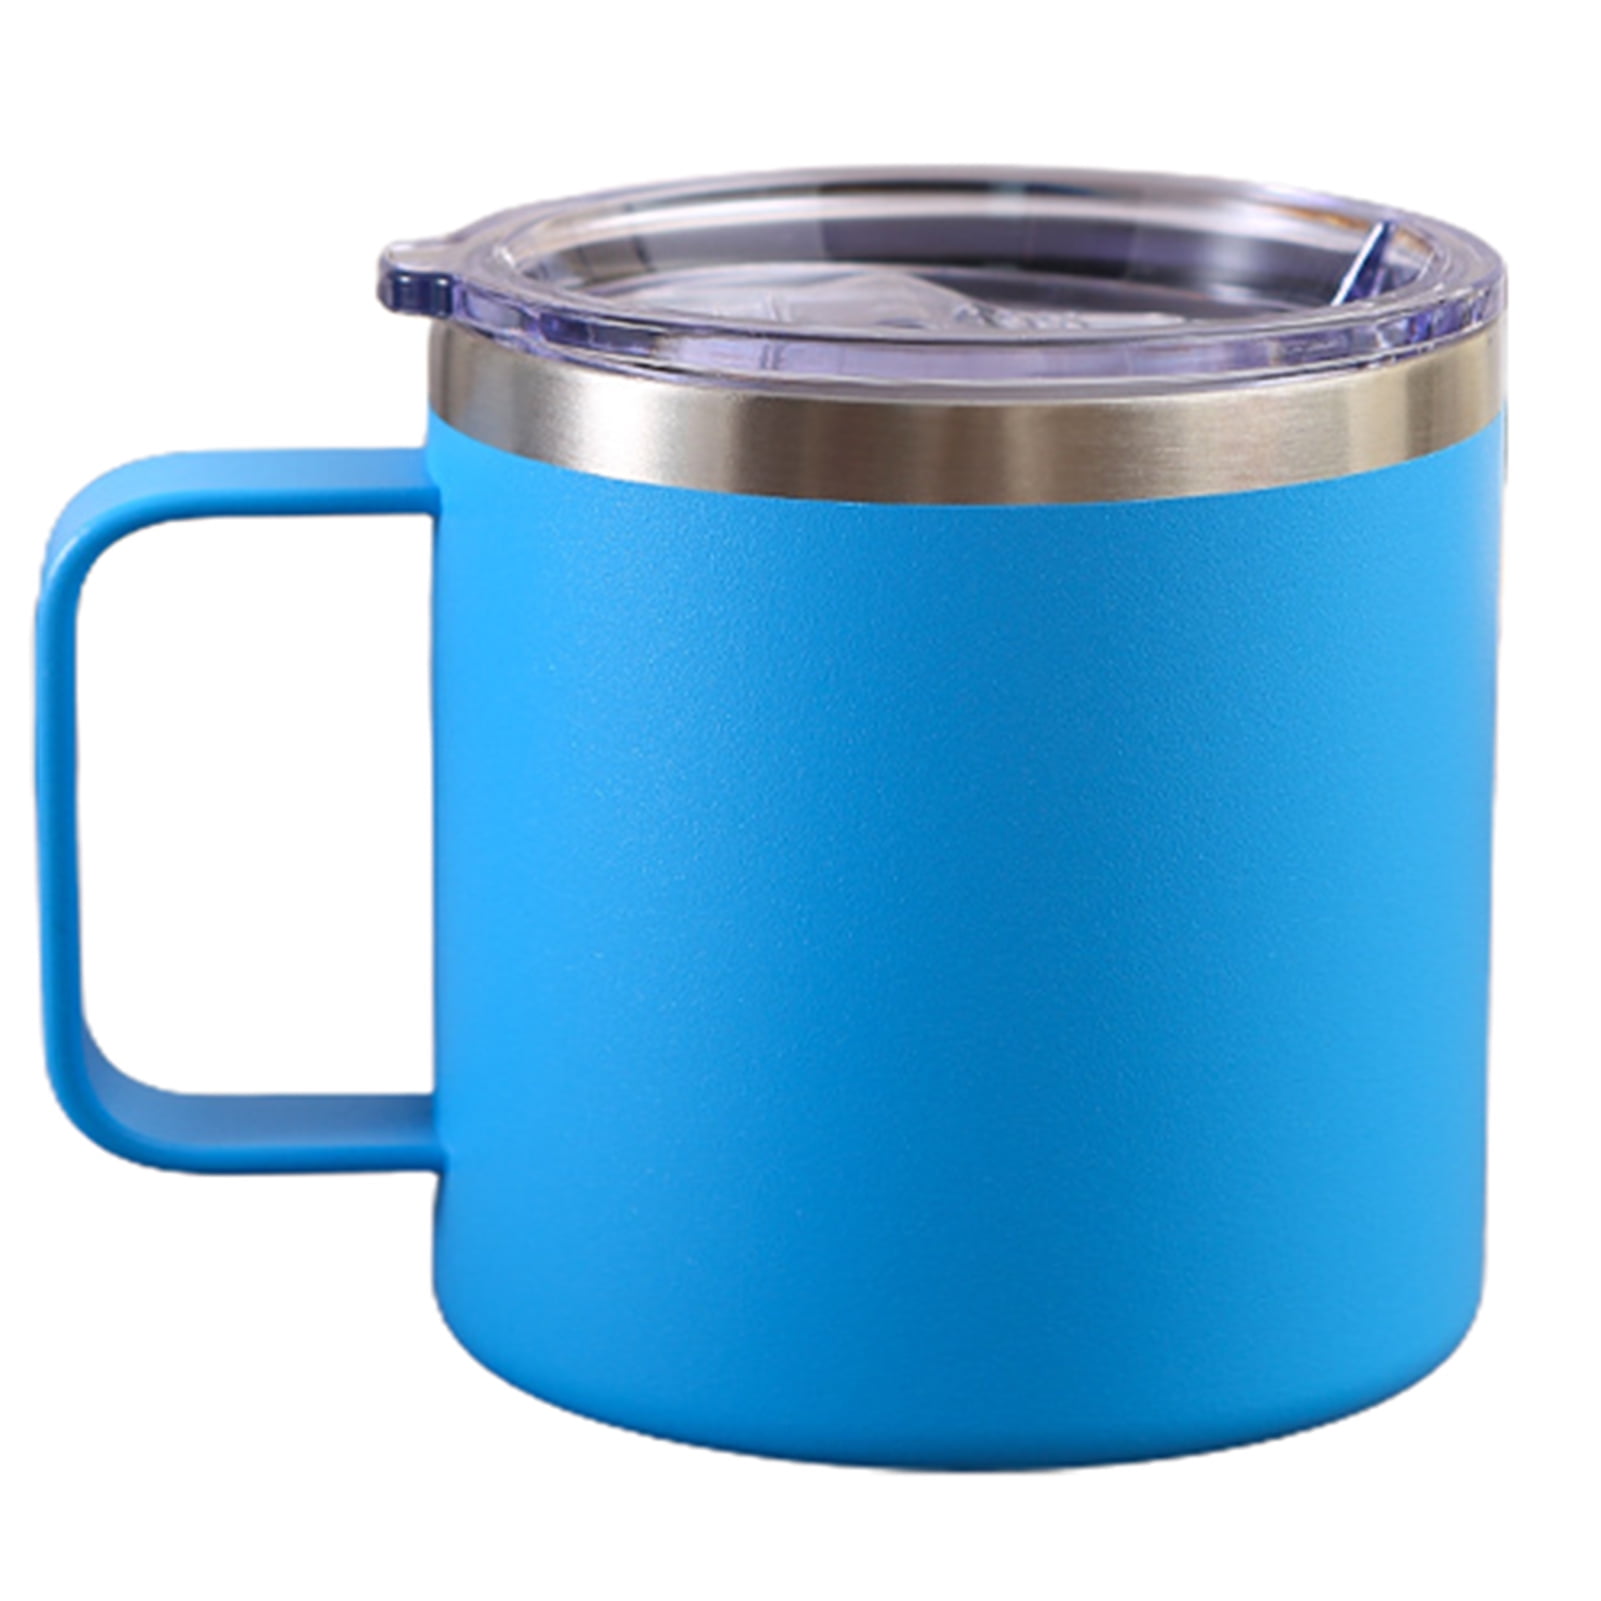 Japanese Camping Coffee Mug Unbreakable Kid's Milk Juice Mug Microwavable  Tea Water Mug for Travel 1…See more Japanese Camping Coffee Mug Unbreakable